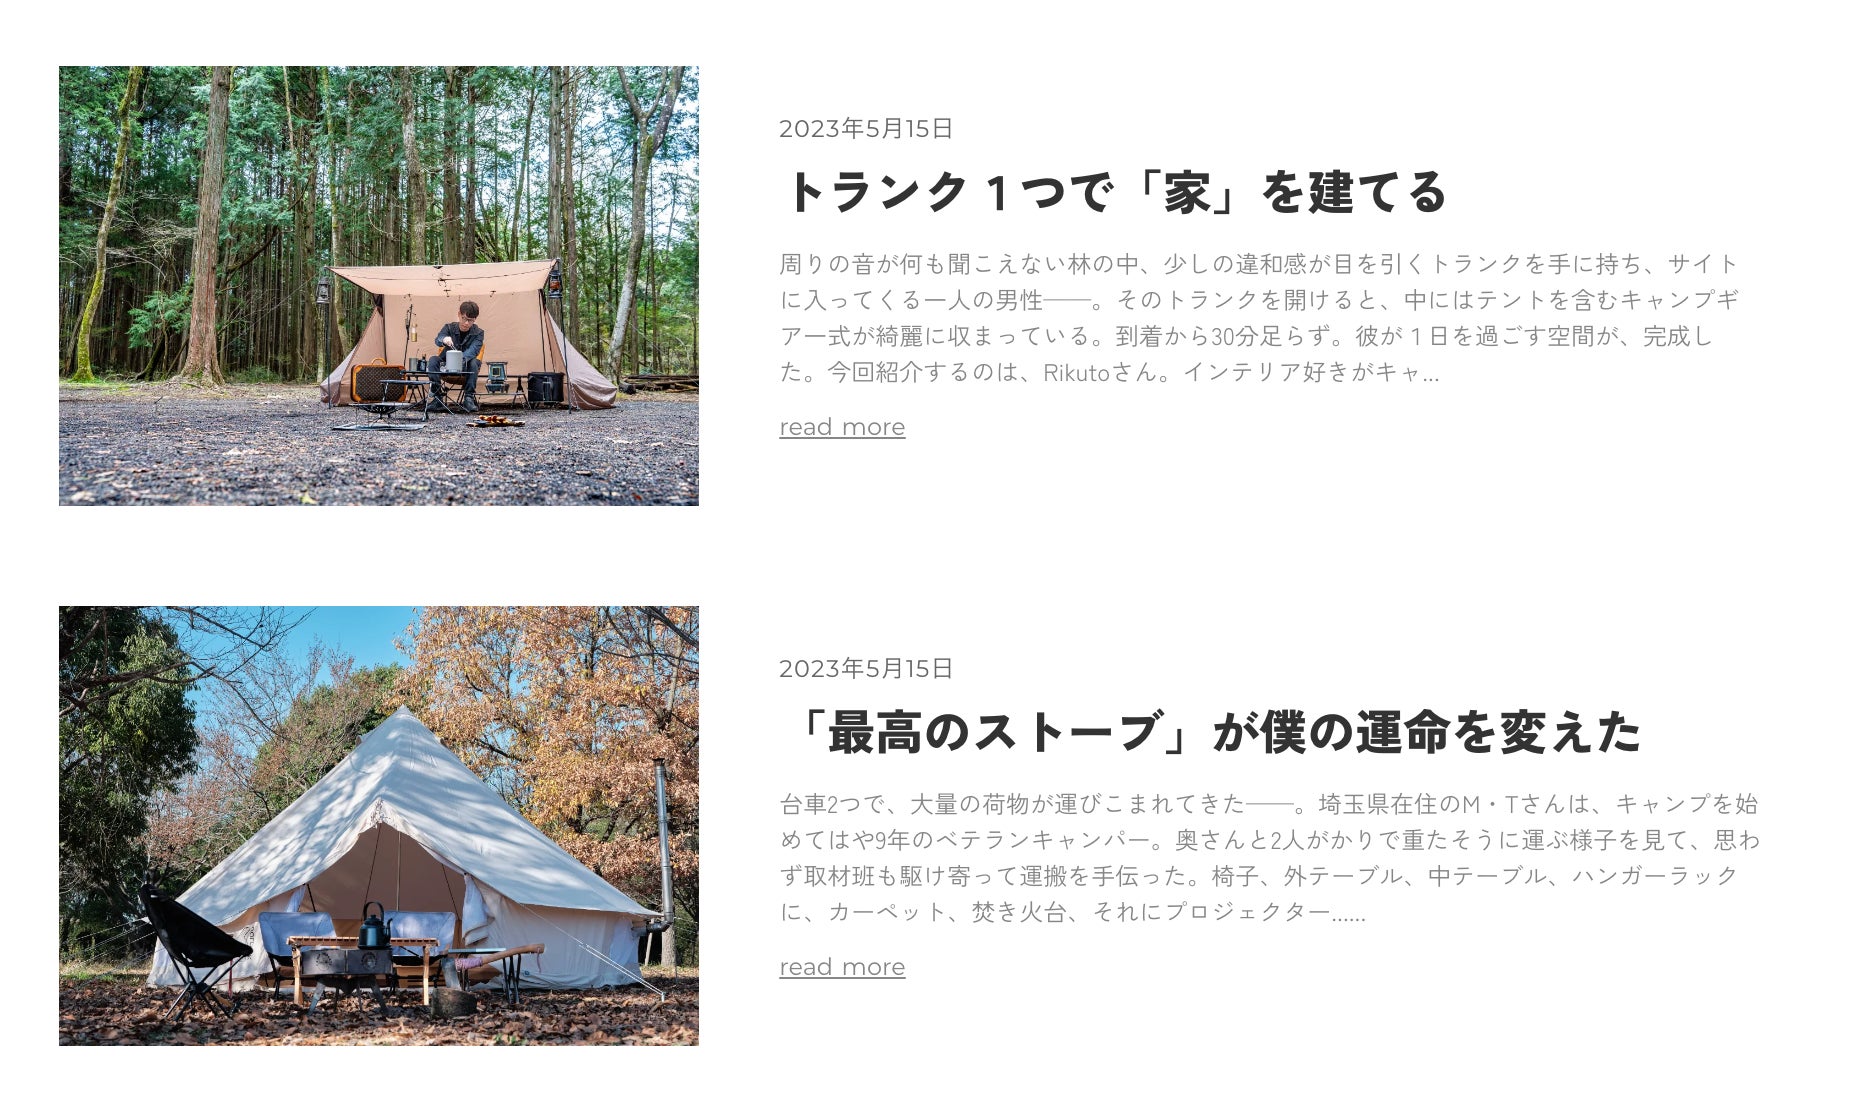 キャンプの楽しさを再発見する本格的なキャンプスタイルメディア「FORRENT」を公開のサブ画像3